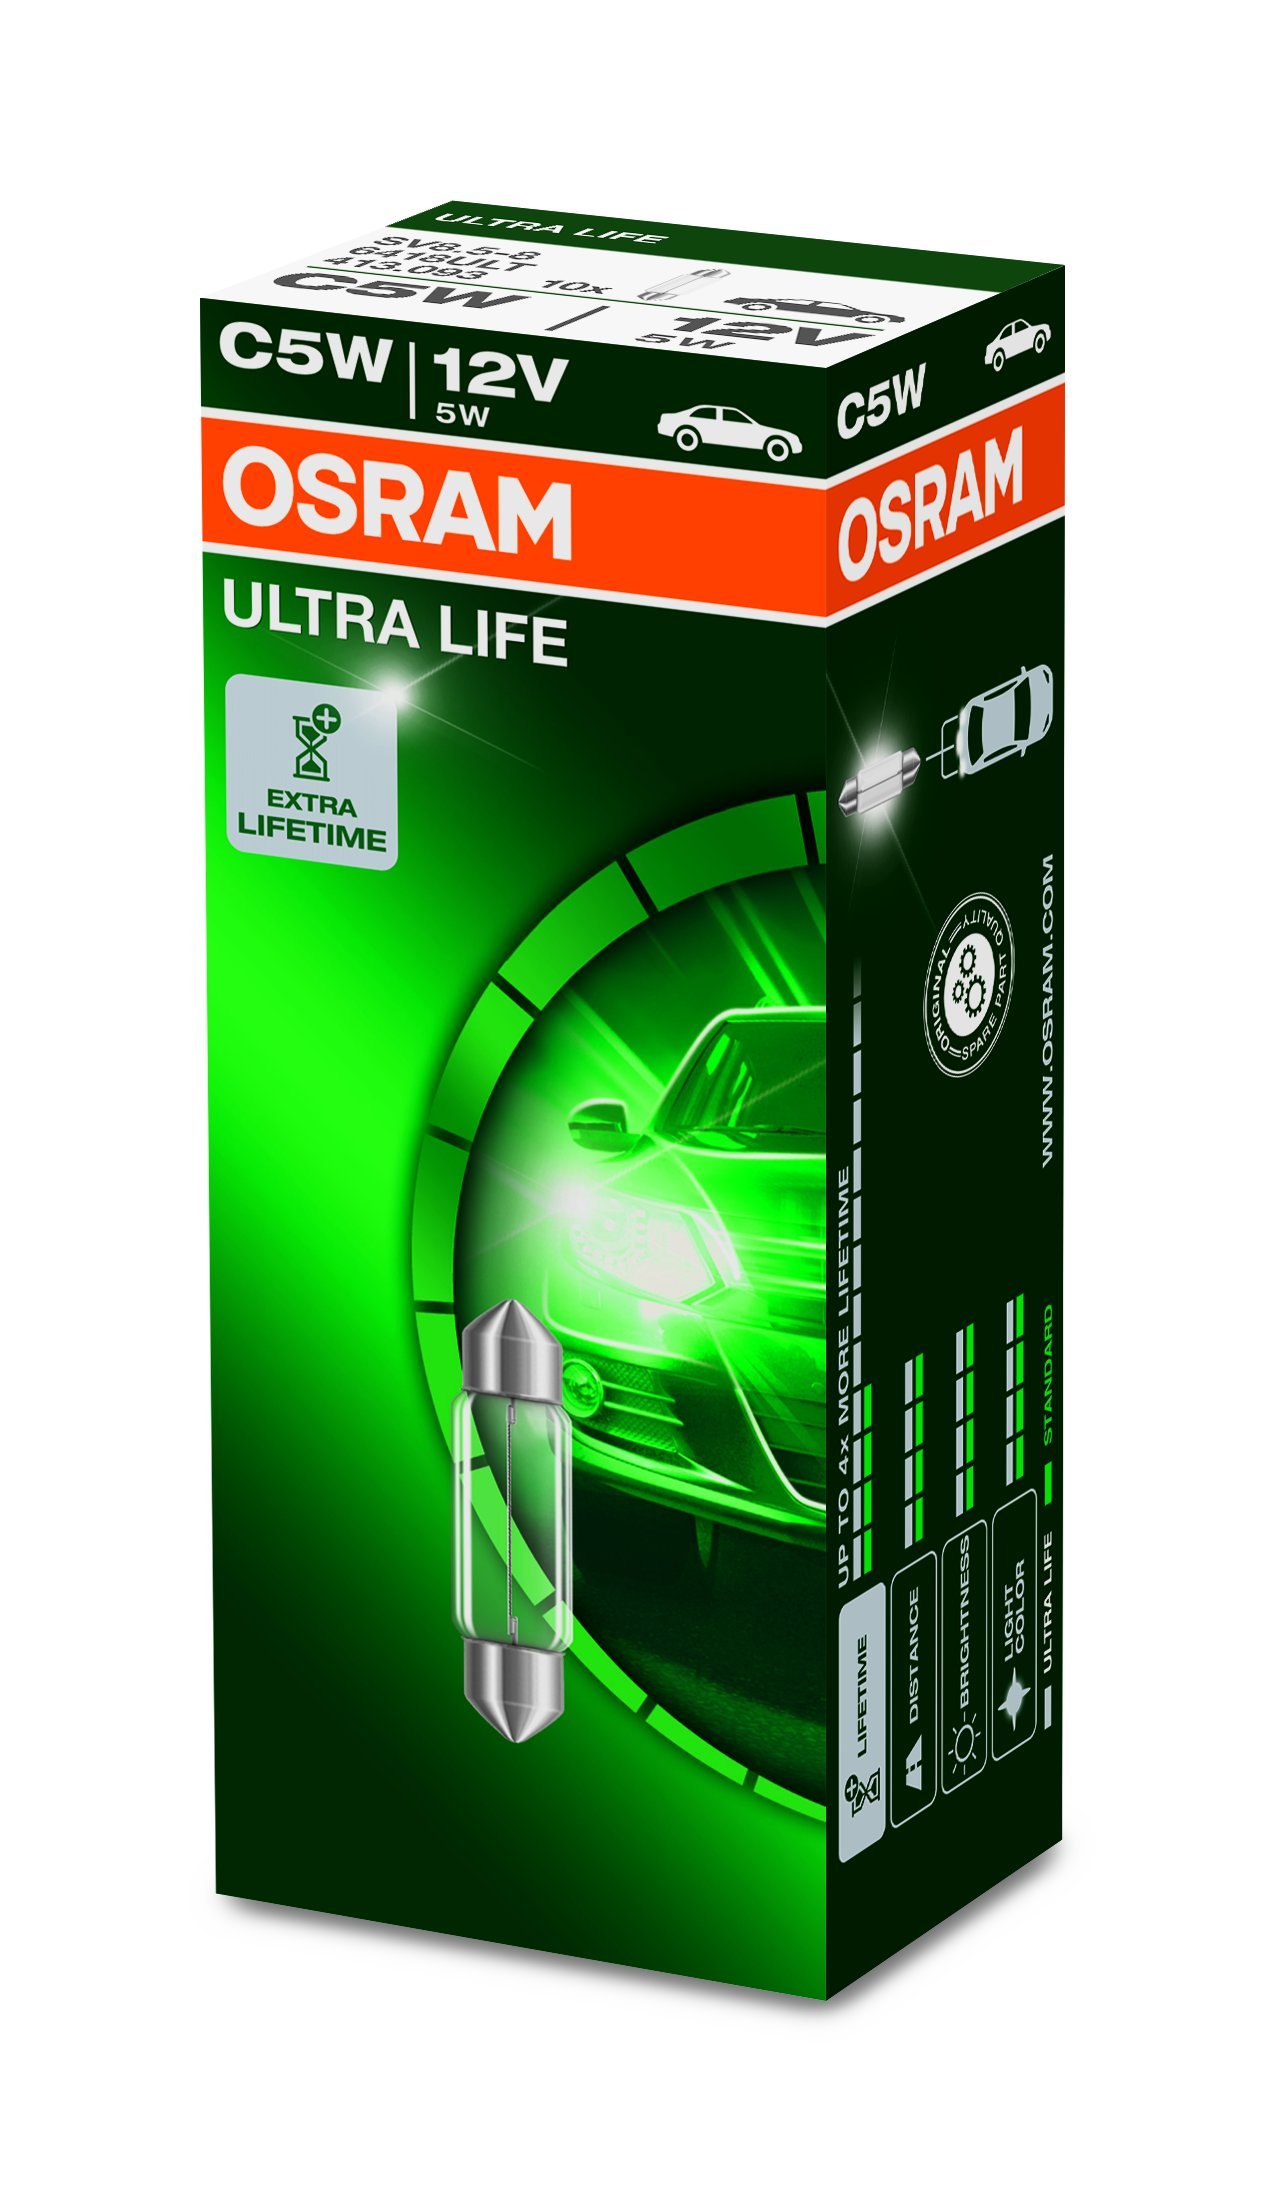 Osram ULTRA LIFE C5W Halogen, Innenbeleuchtung, 6418ULT, 12V PKW, Faltschachtel (10 Stück) von Osram